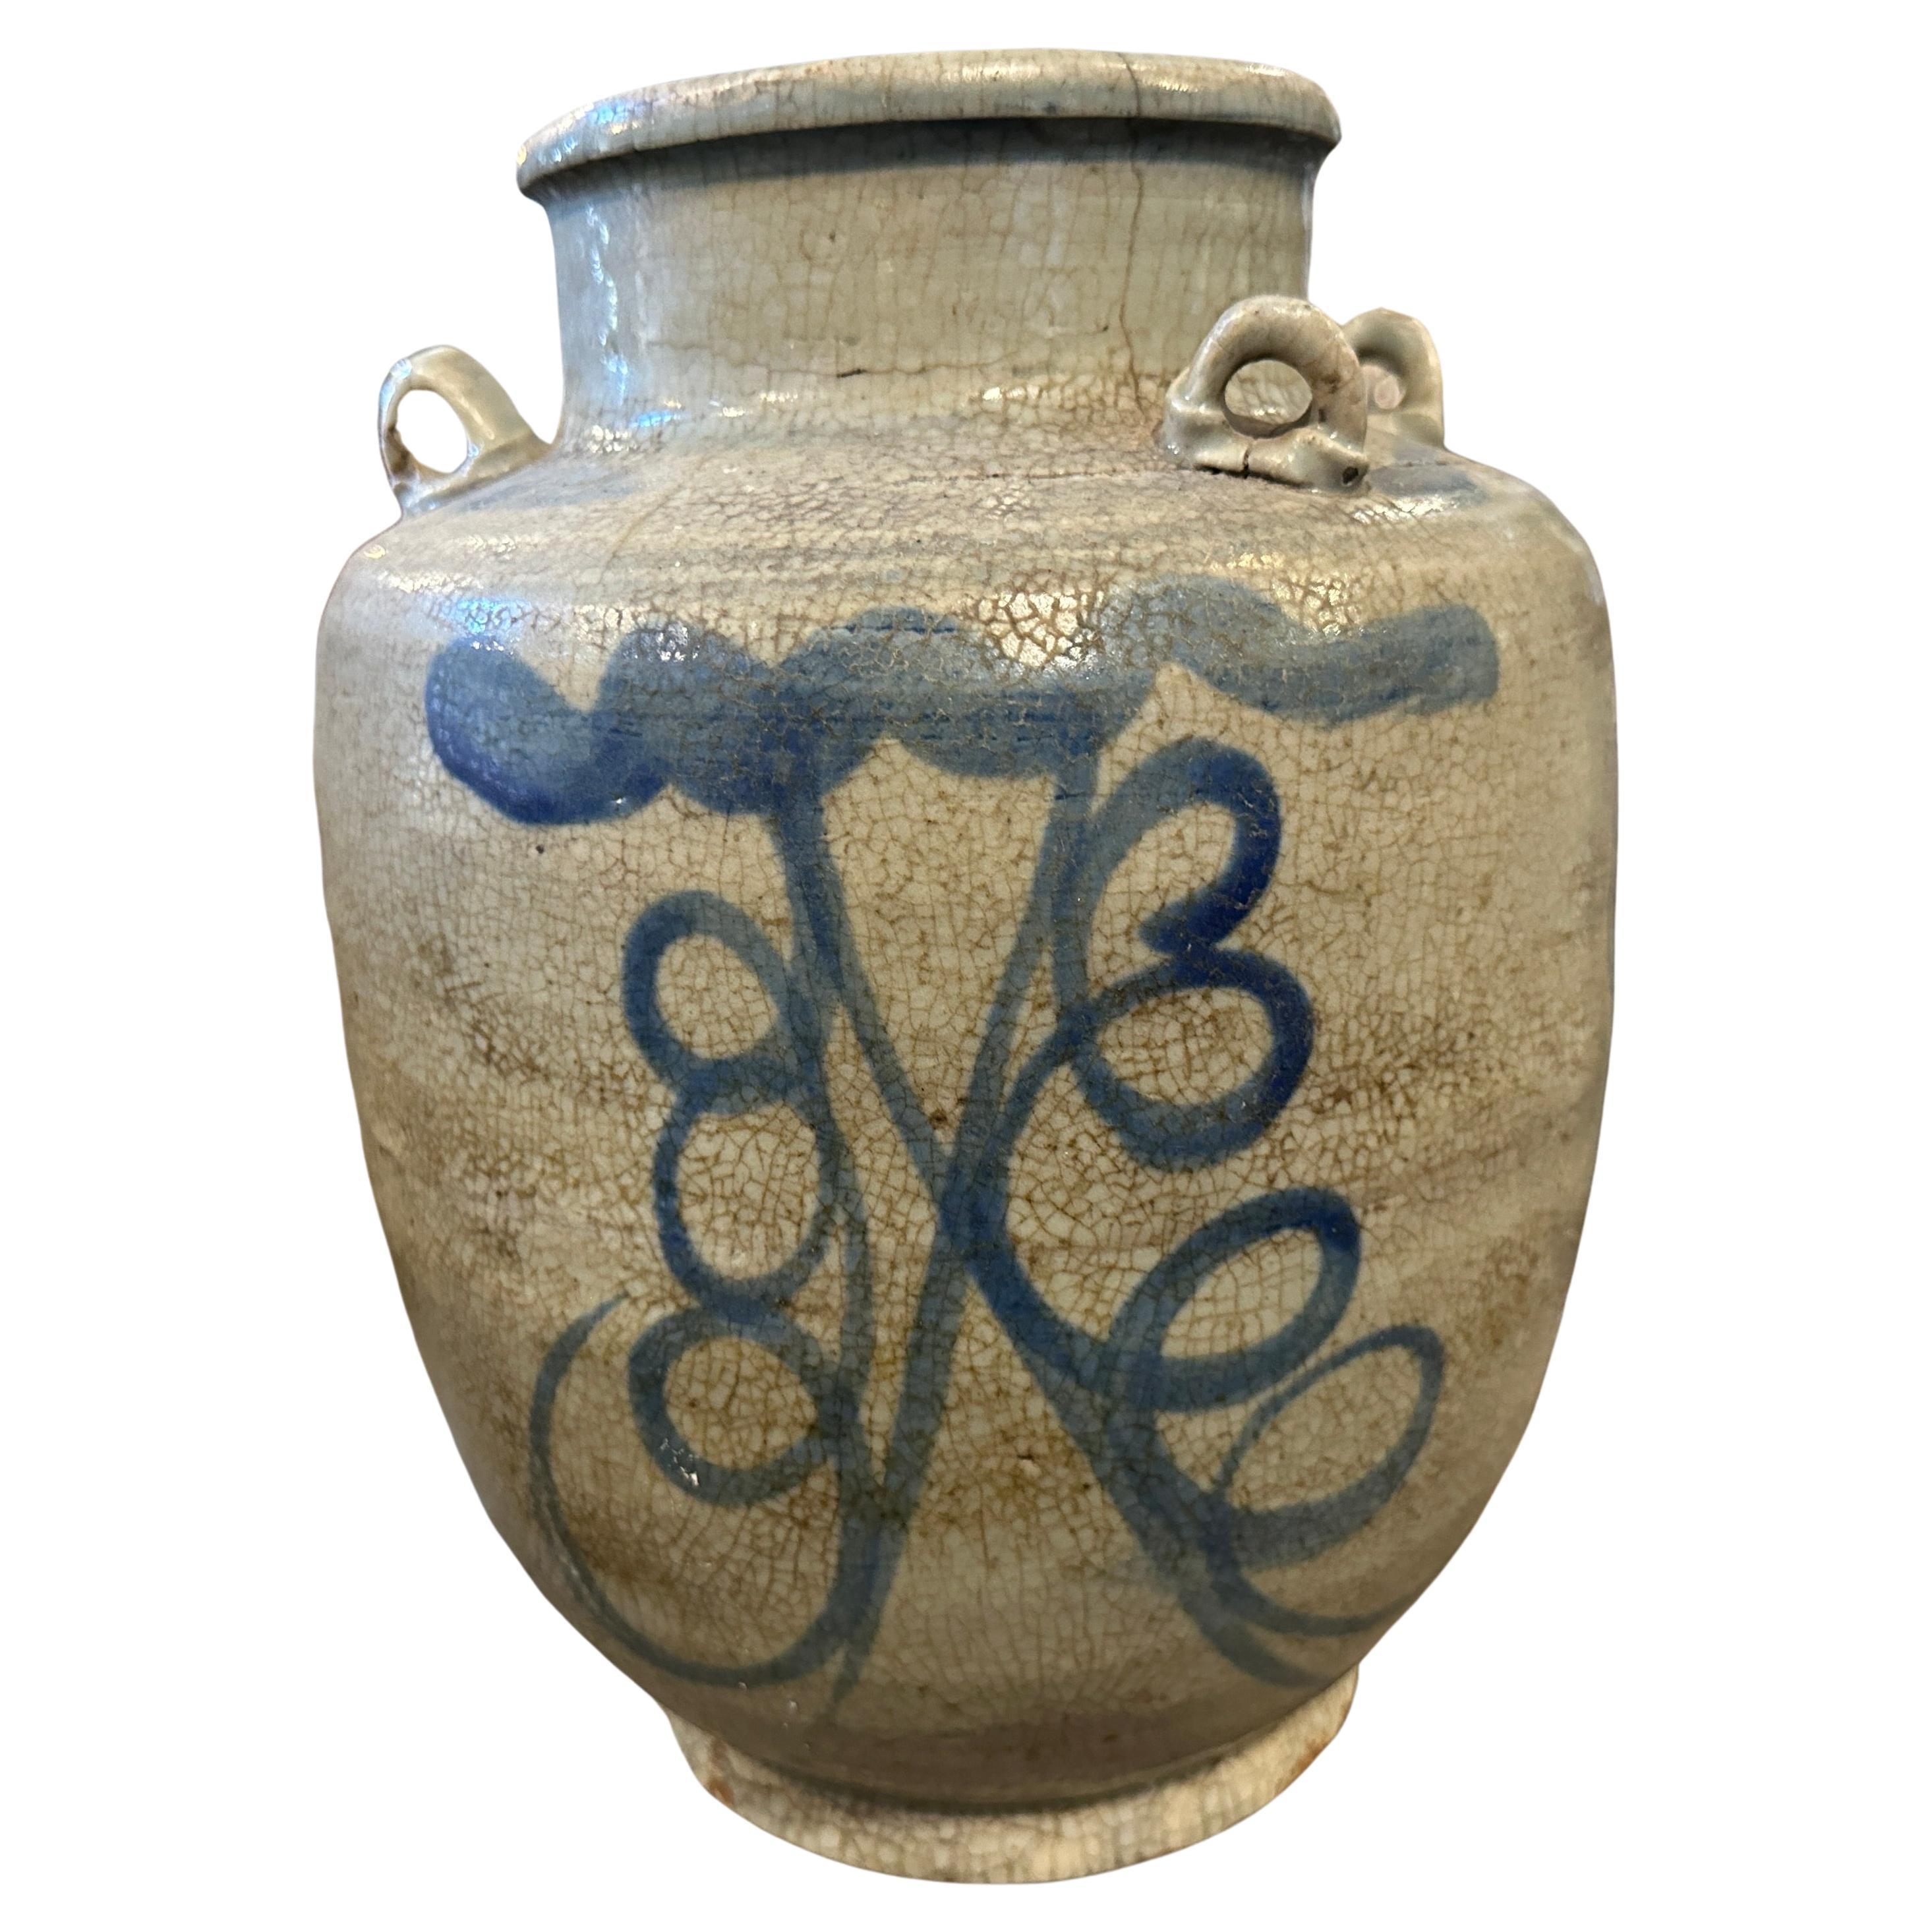 La cruche a été fabriquée en Chine à la fin du XIXe siècle. Elle présente des motifs chinois traditionnels peints à la main dans des tons bleus sur fond blanc. Le vase est en conditions originales avec des signes d'utilisation et d'âge. Il était